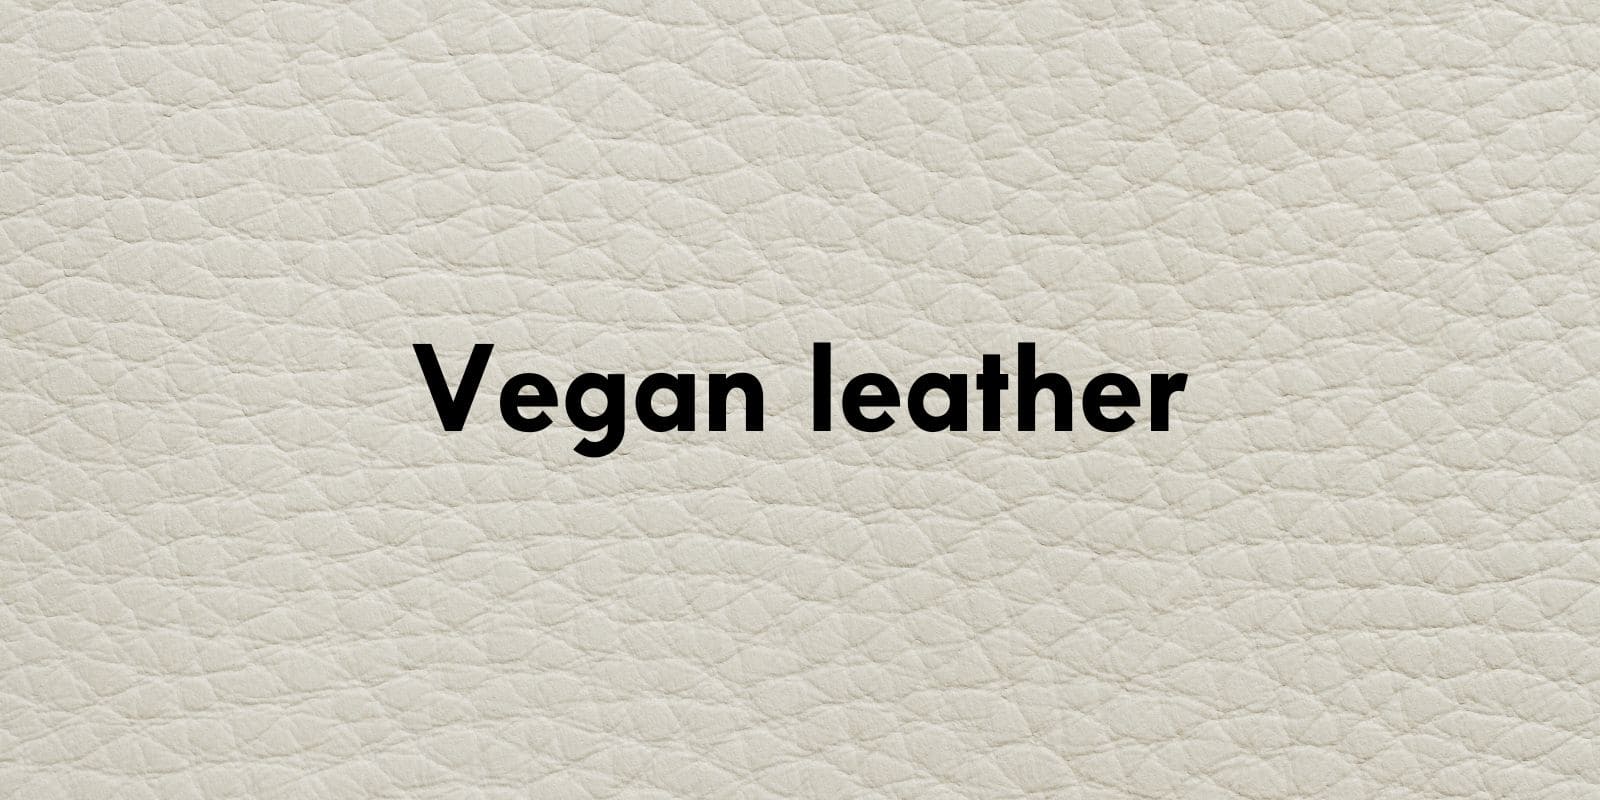 El calzado vegano, libre de plásticos y respetuoso con el